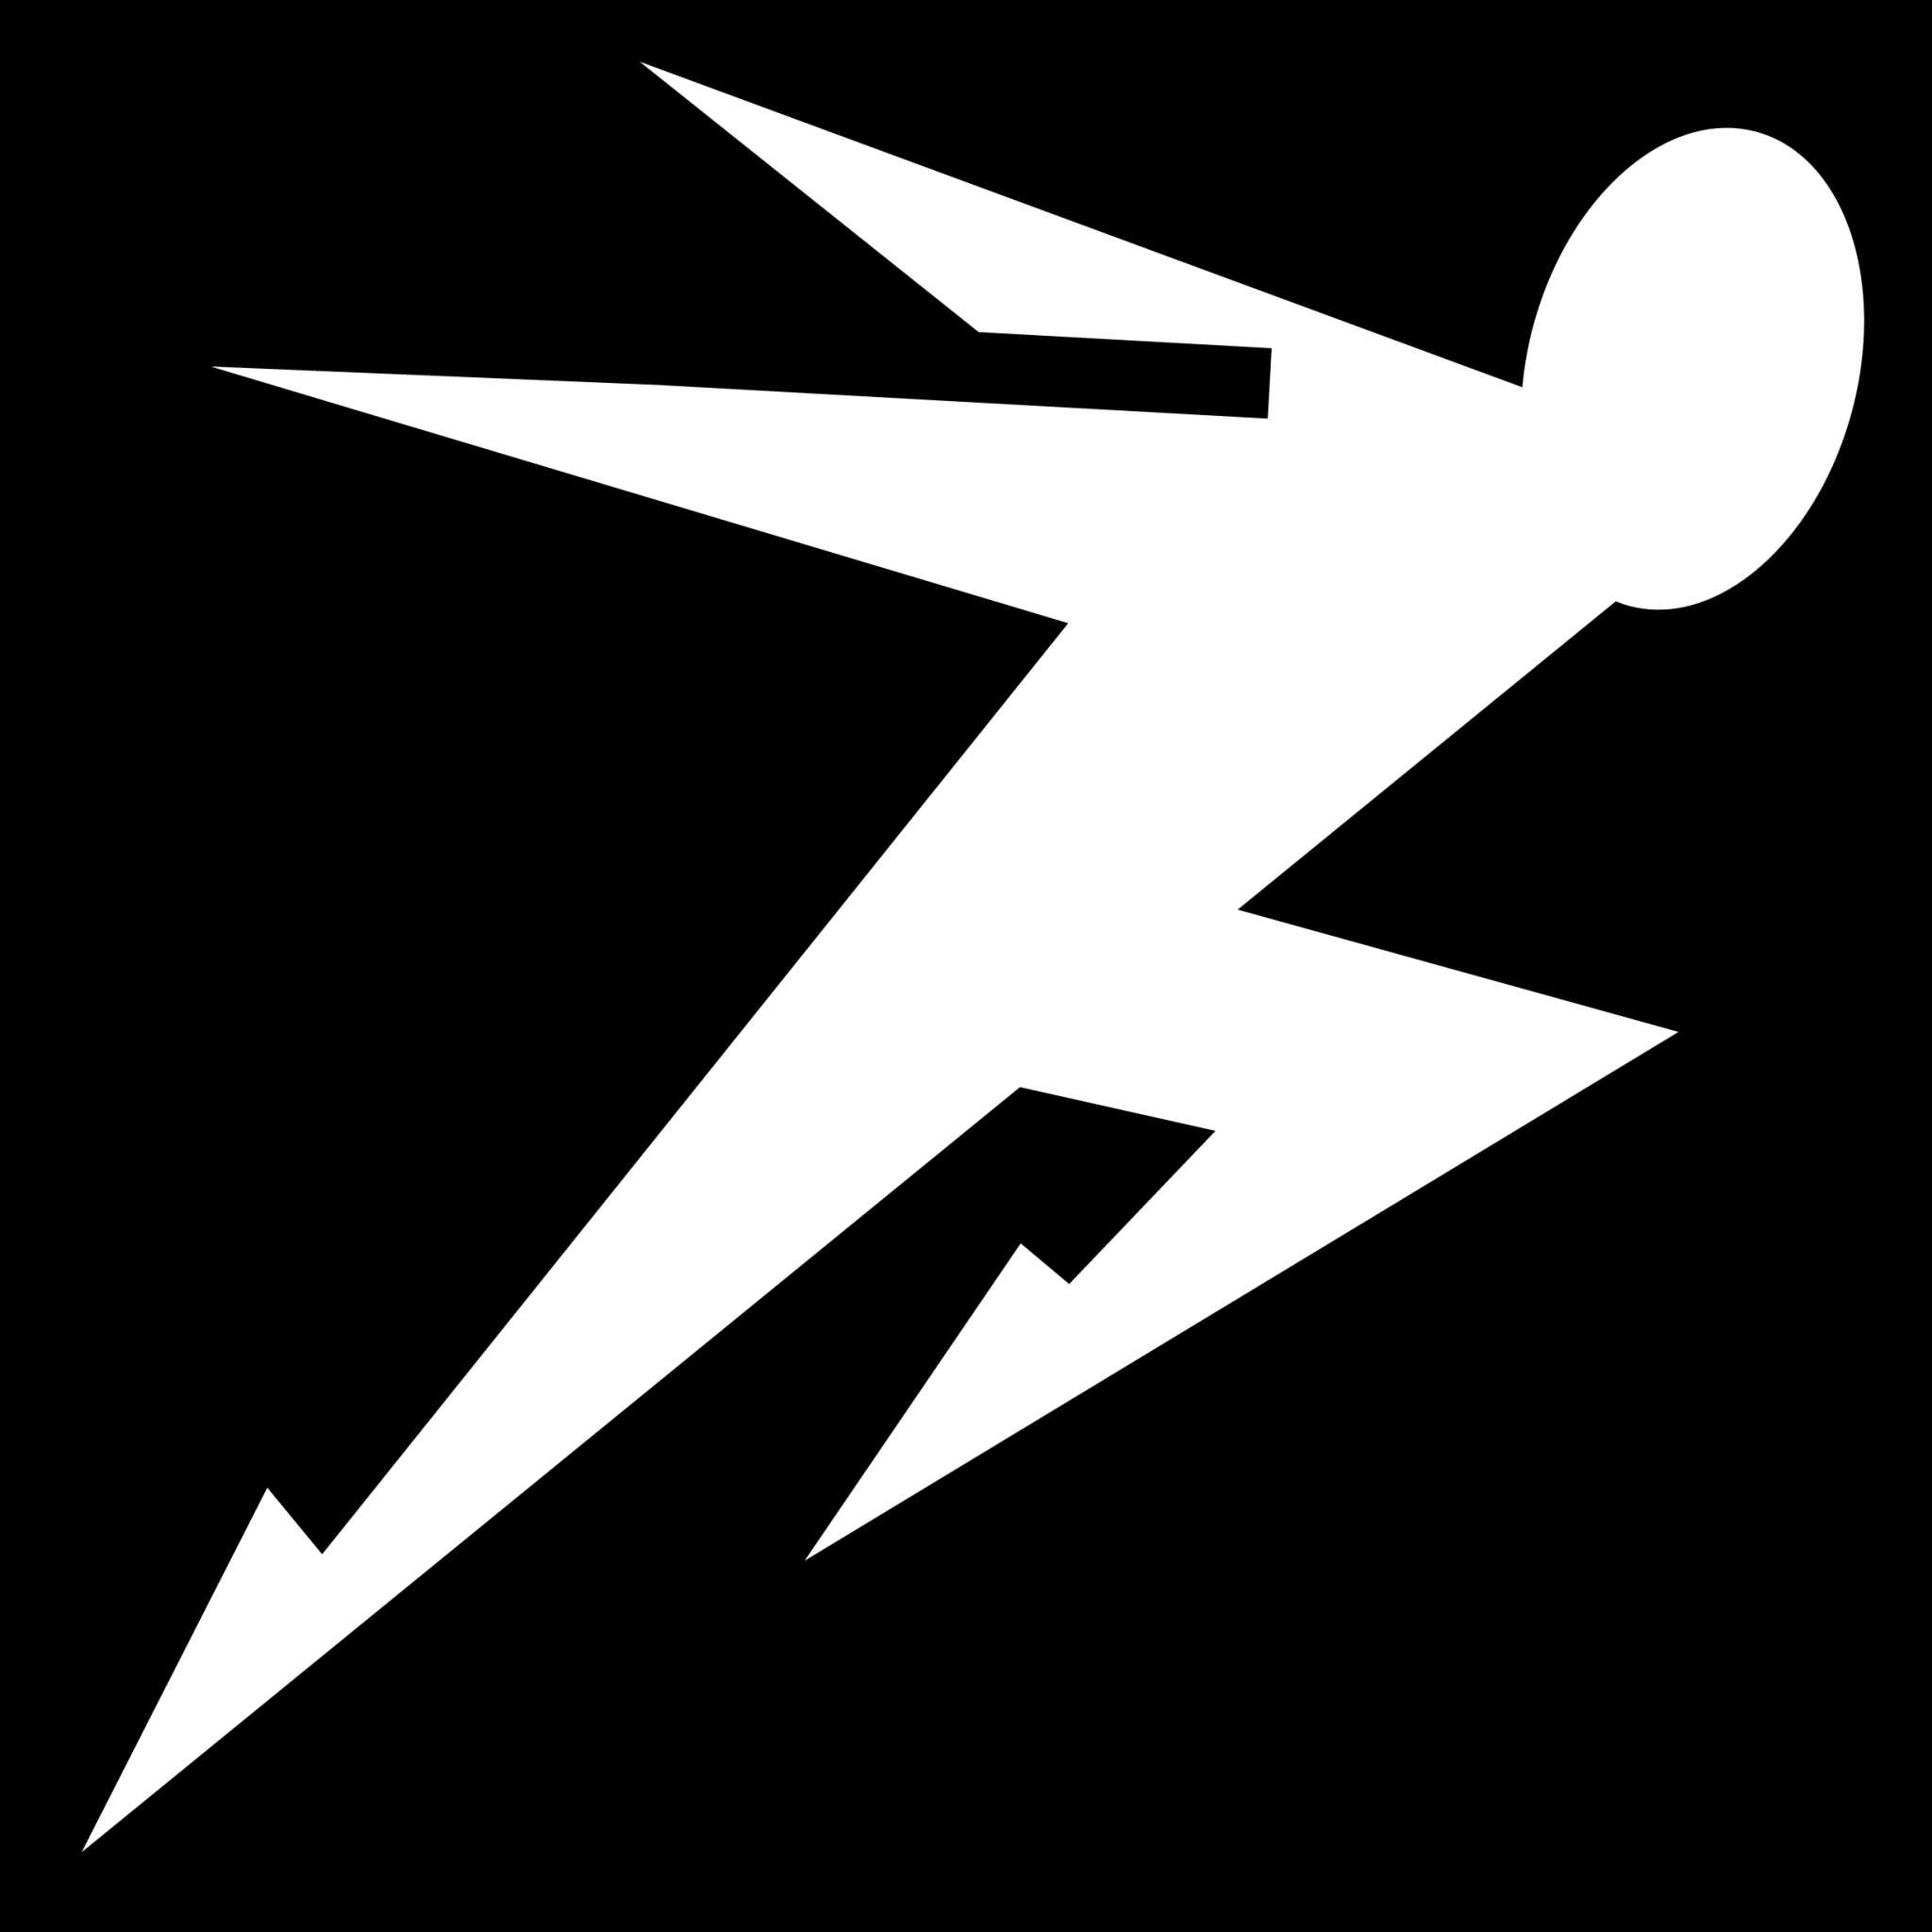 sprint run icon